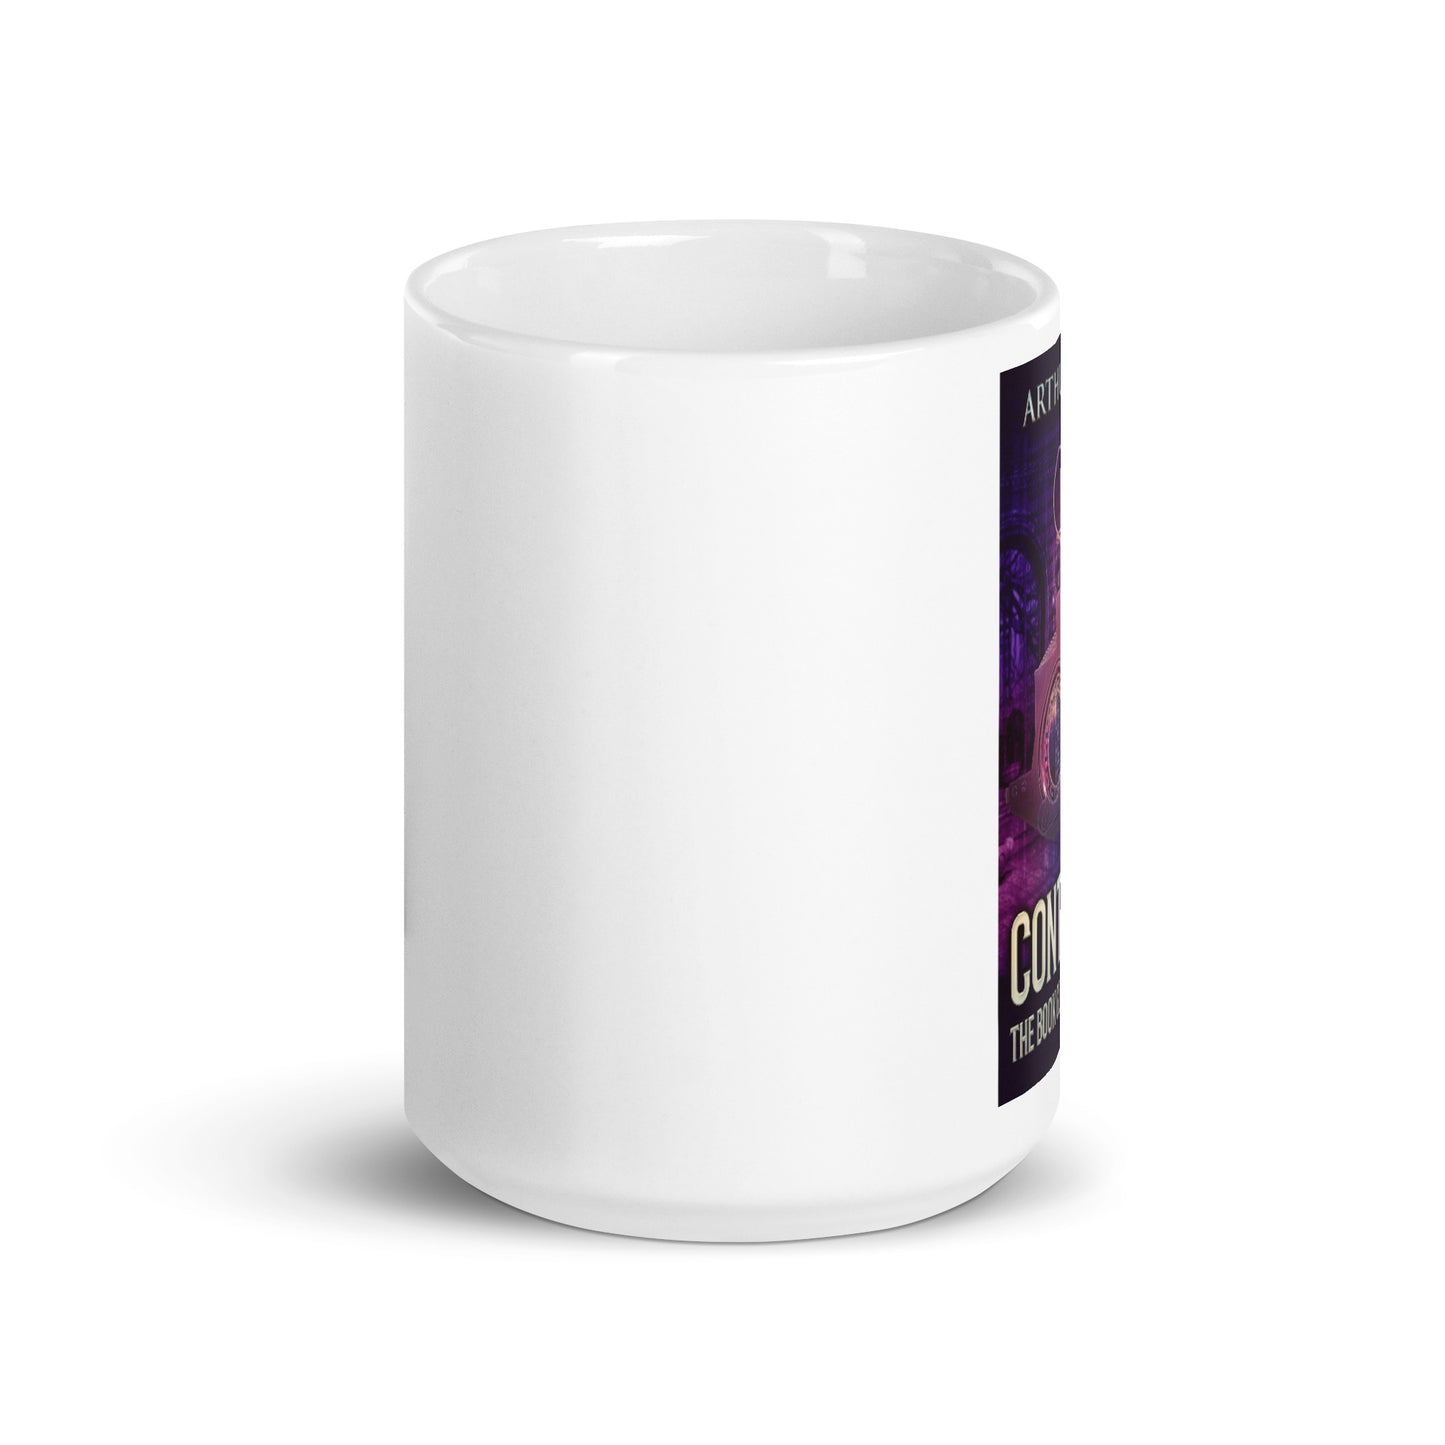 Contrarium - White Coffee Mug